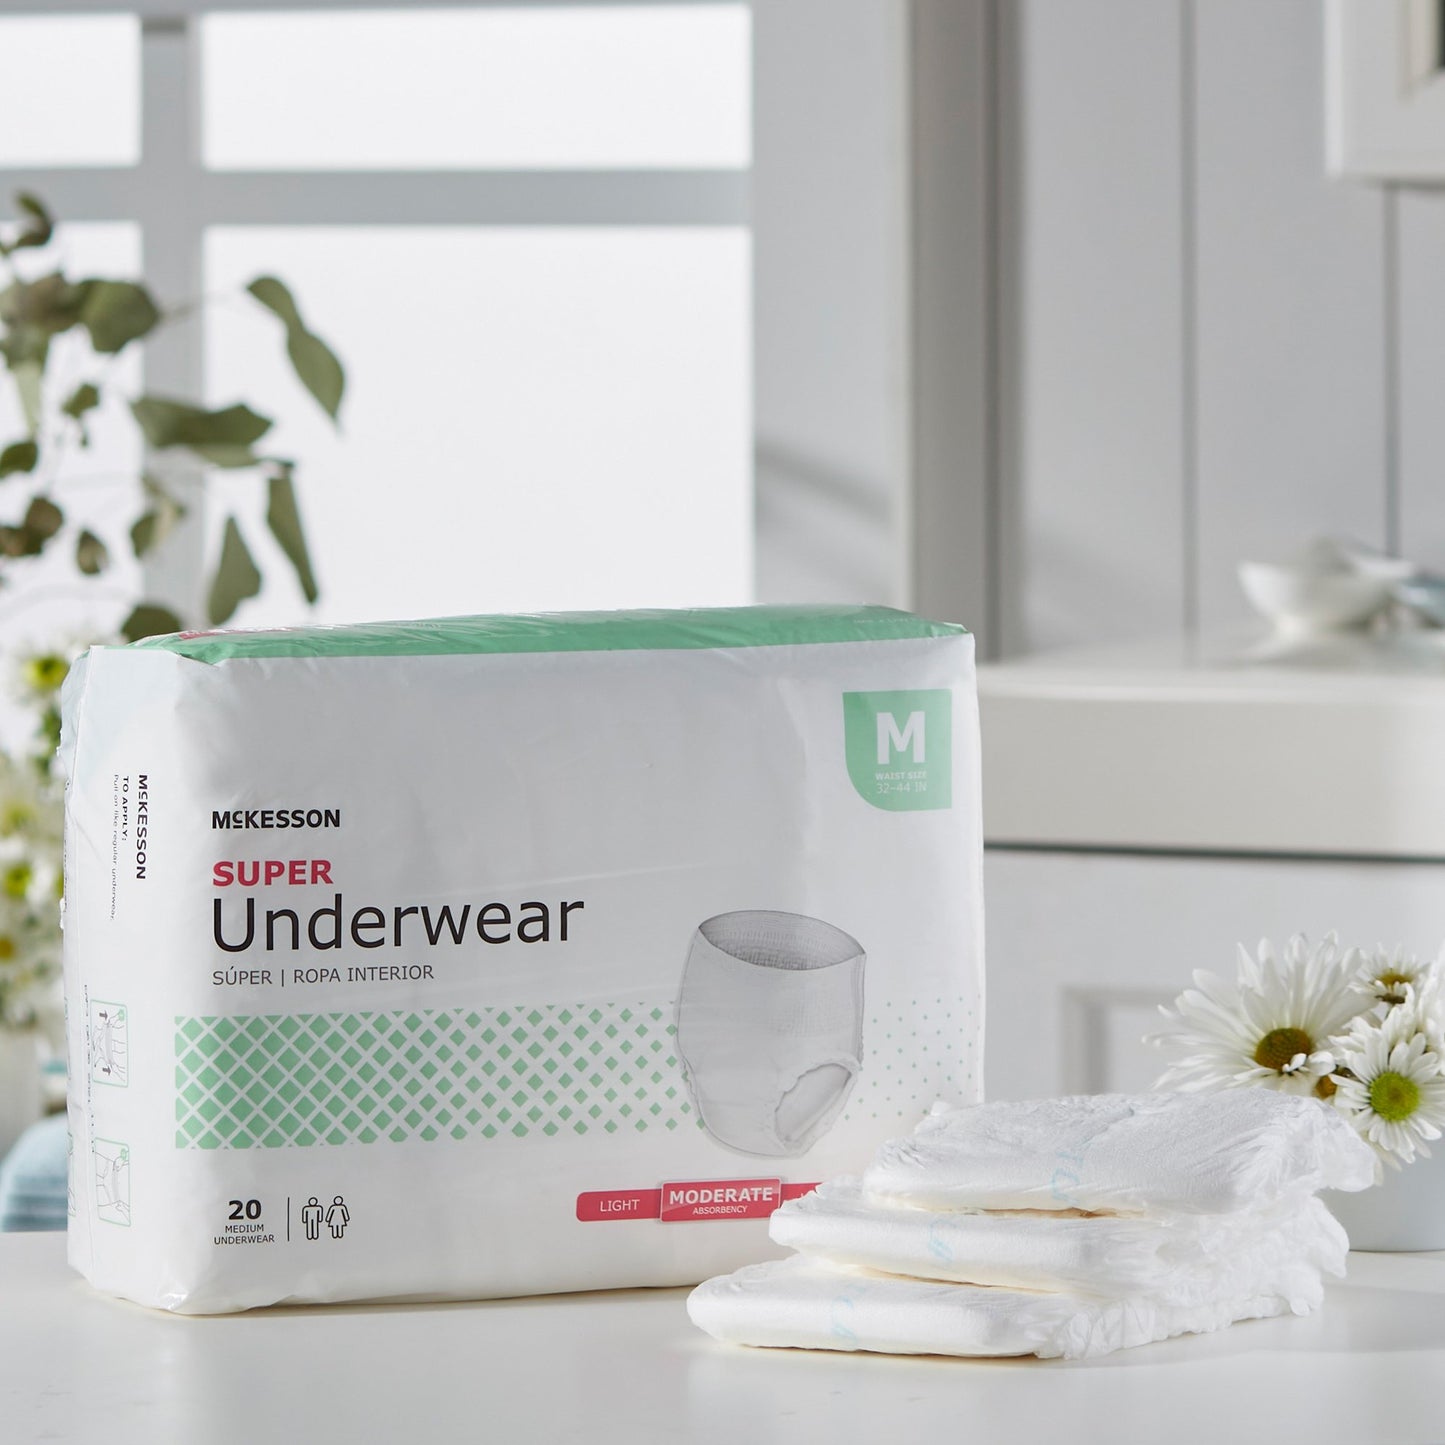 McKesson Super Moderate Absorbent Underwear, Medium, 80 ct